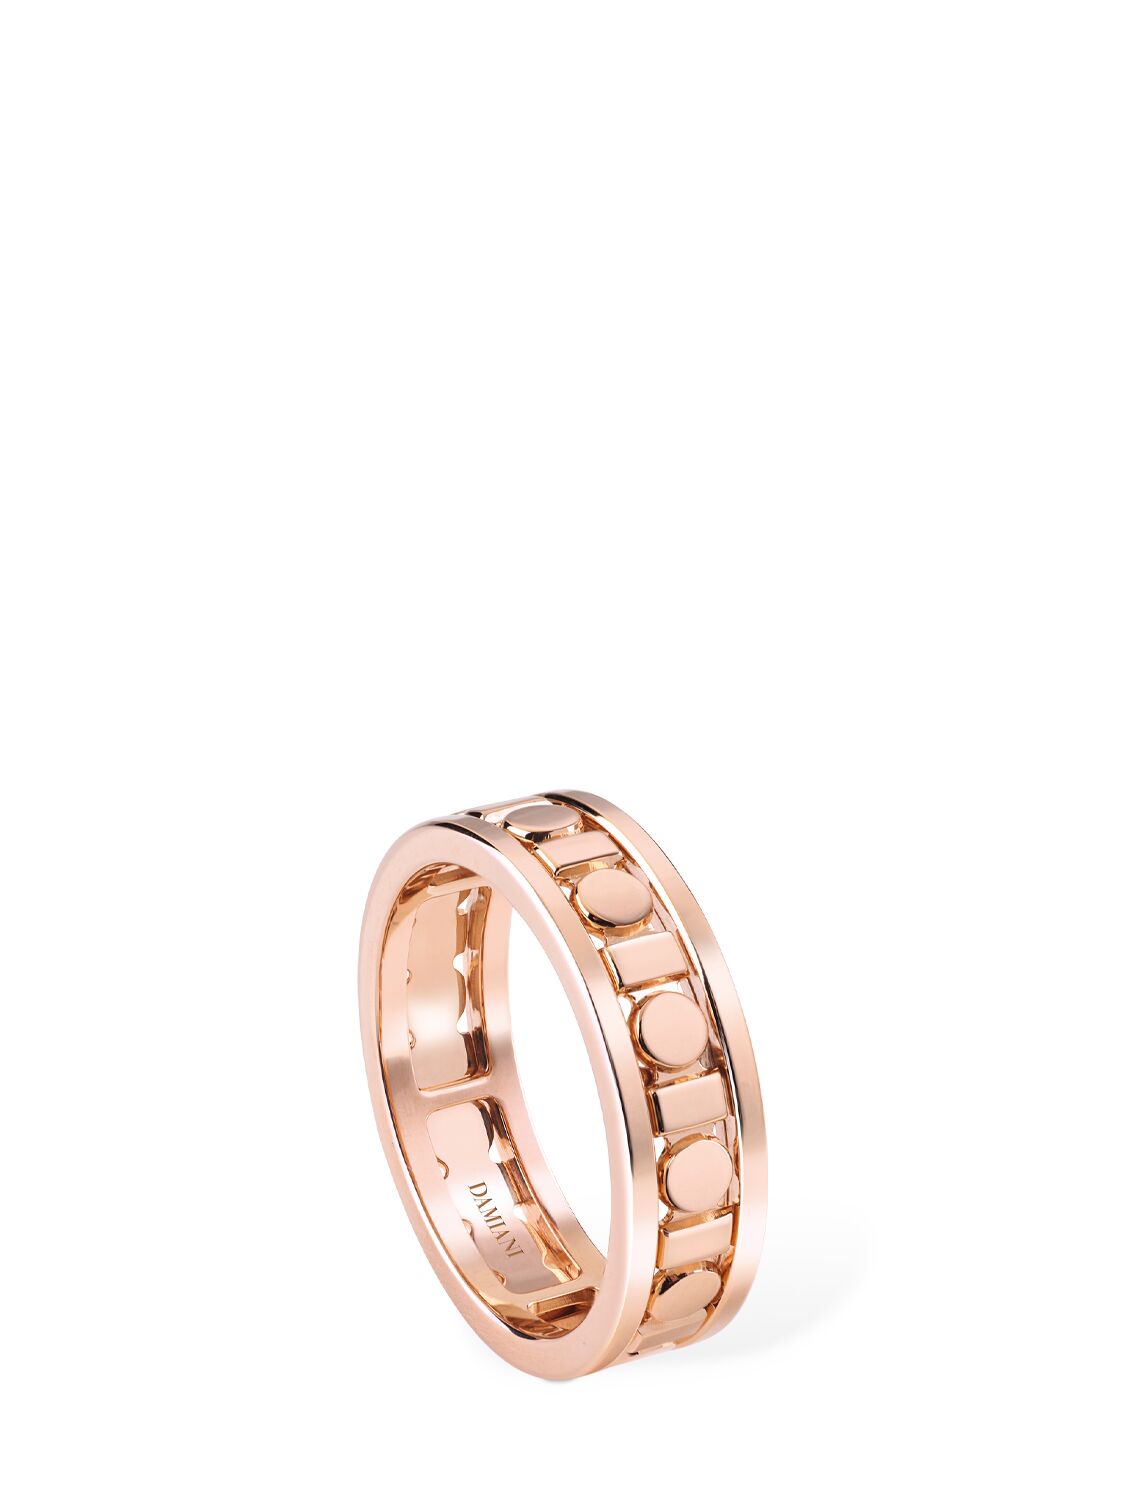 Image of Belle Époque Reel 18kt Rose Gold Ring